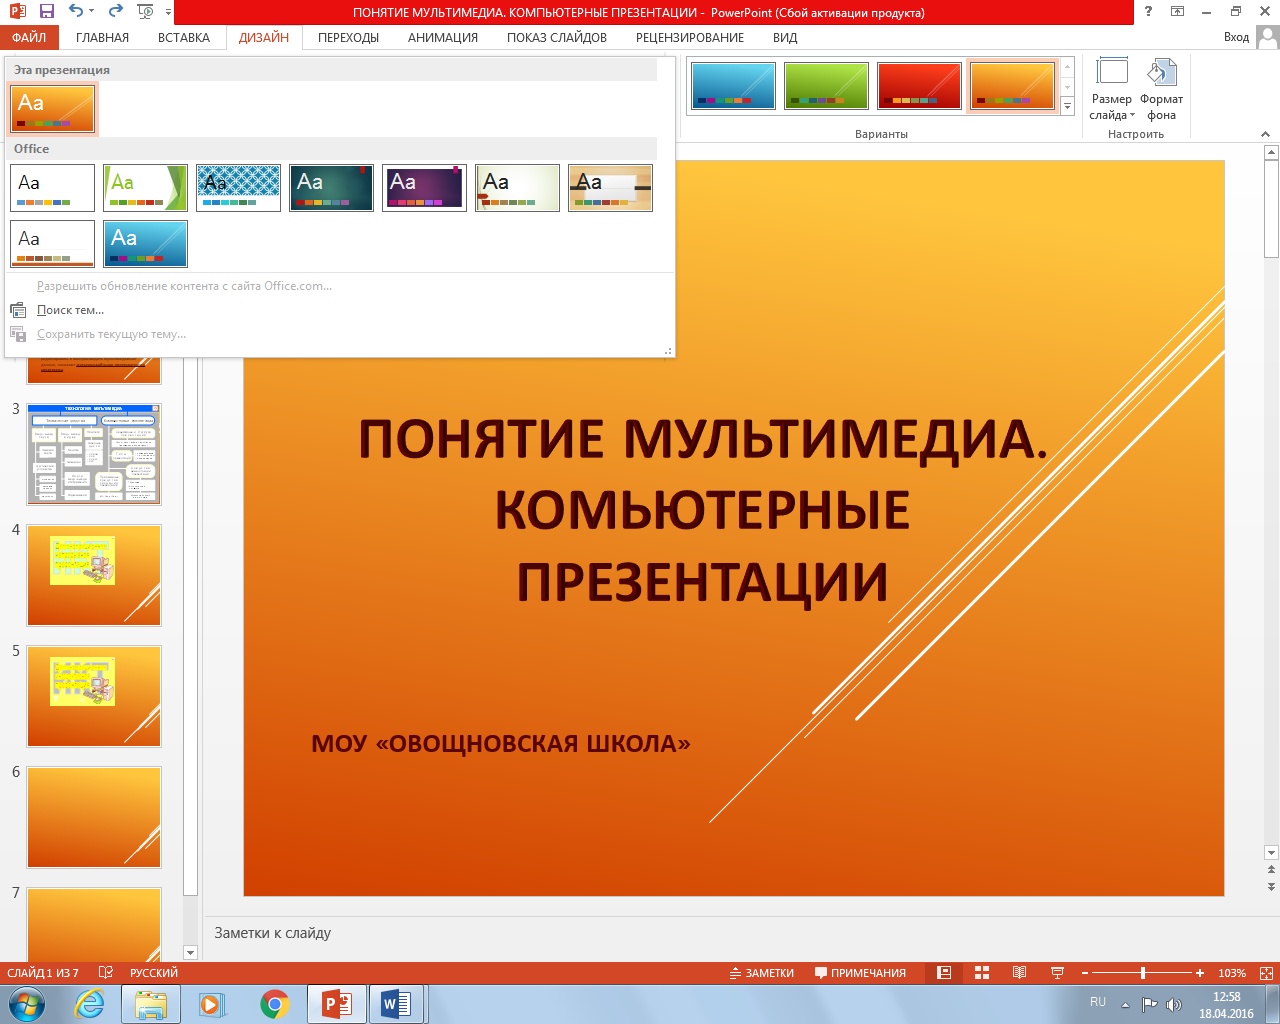 Интерактивный слайд в презентации. Презентация в POWERPOINT. Презентация образец. Примеры оформления слайдов. Для слайдов презентации.